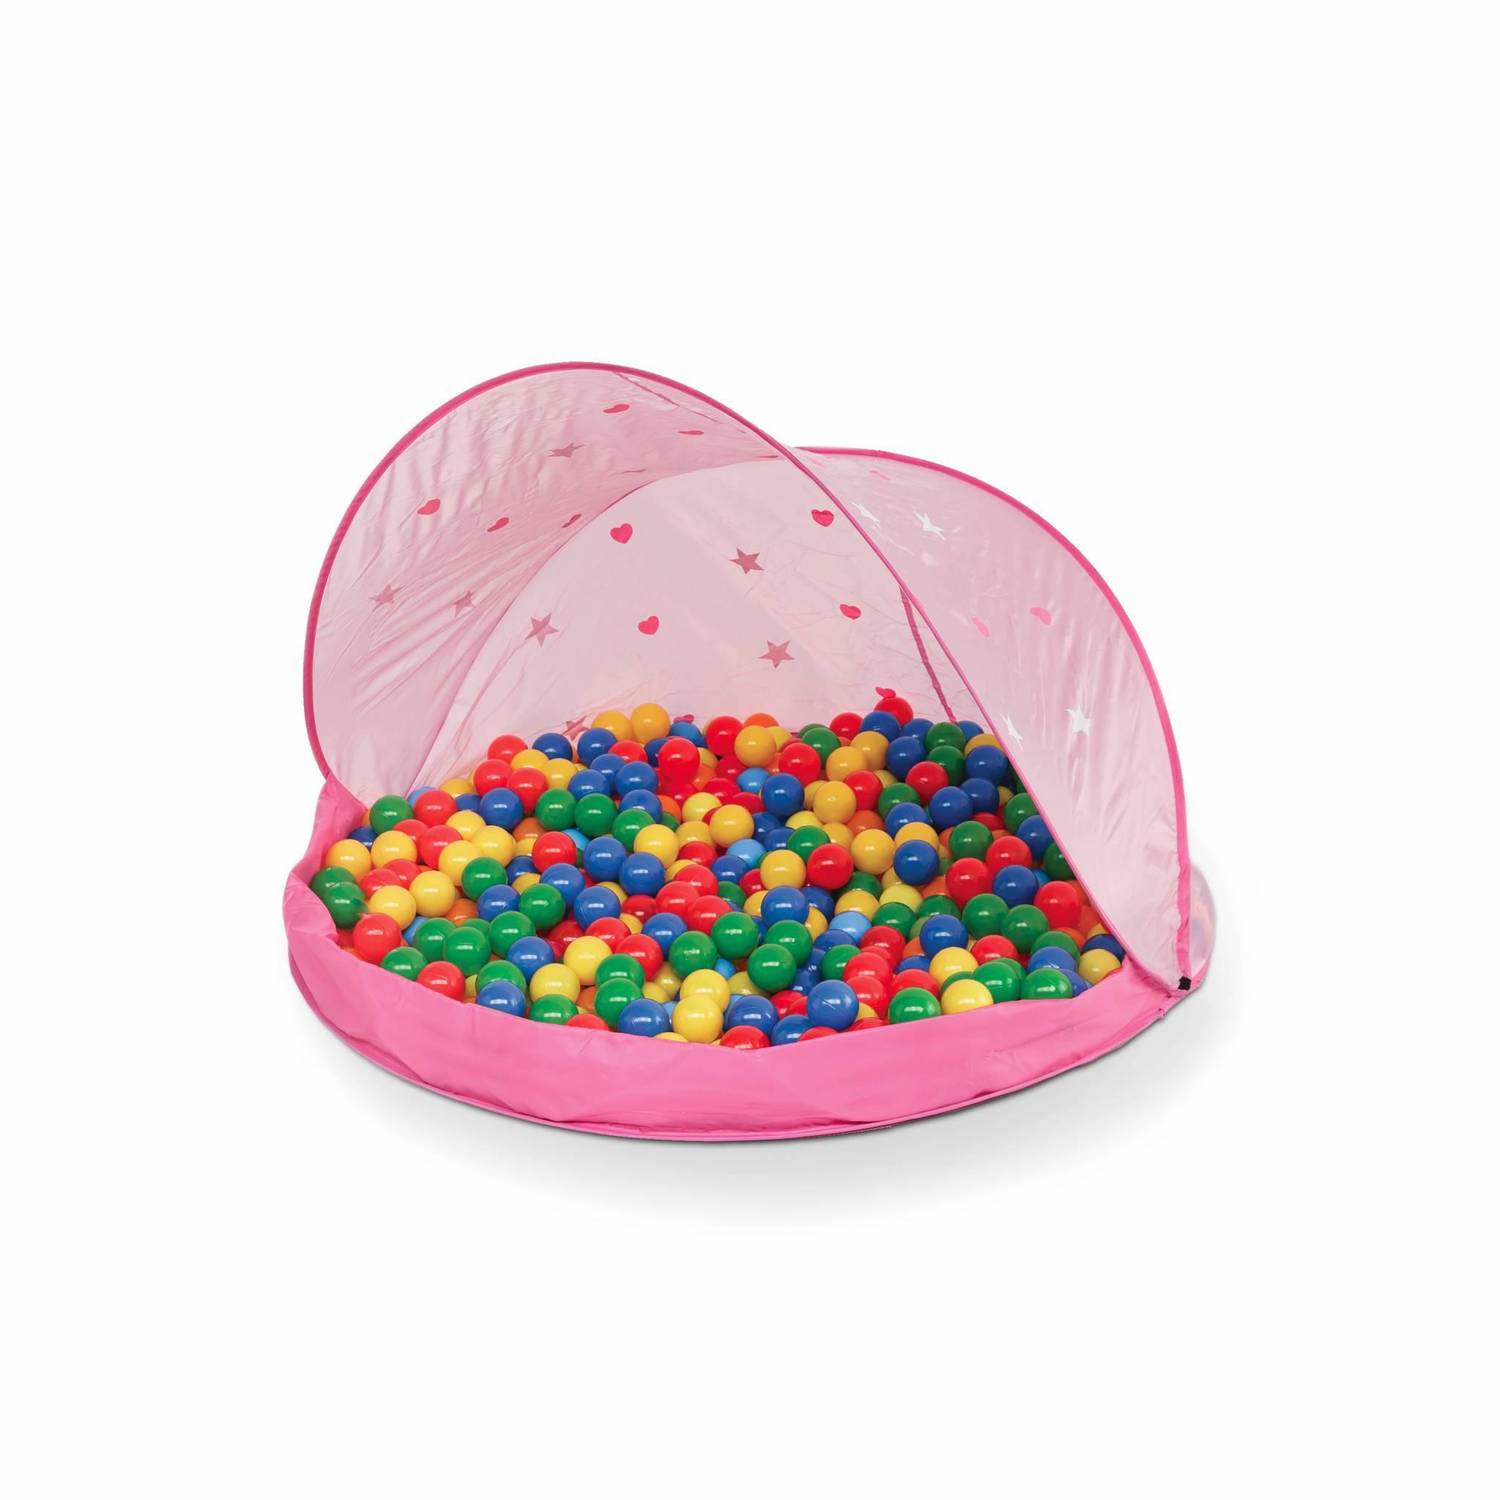 Roze pop-up speeltent voor kinderen – Paulette, zonwerende tent met 50 ballen Photo1